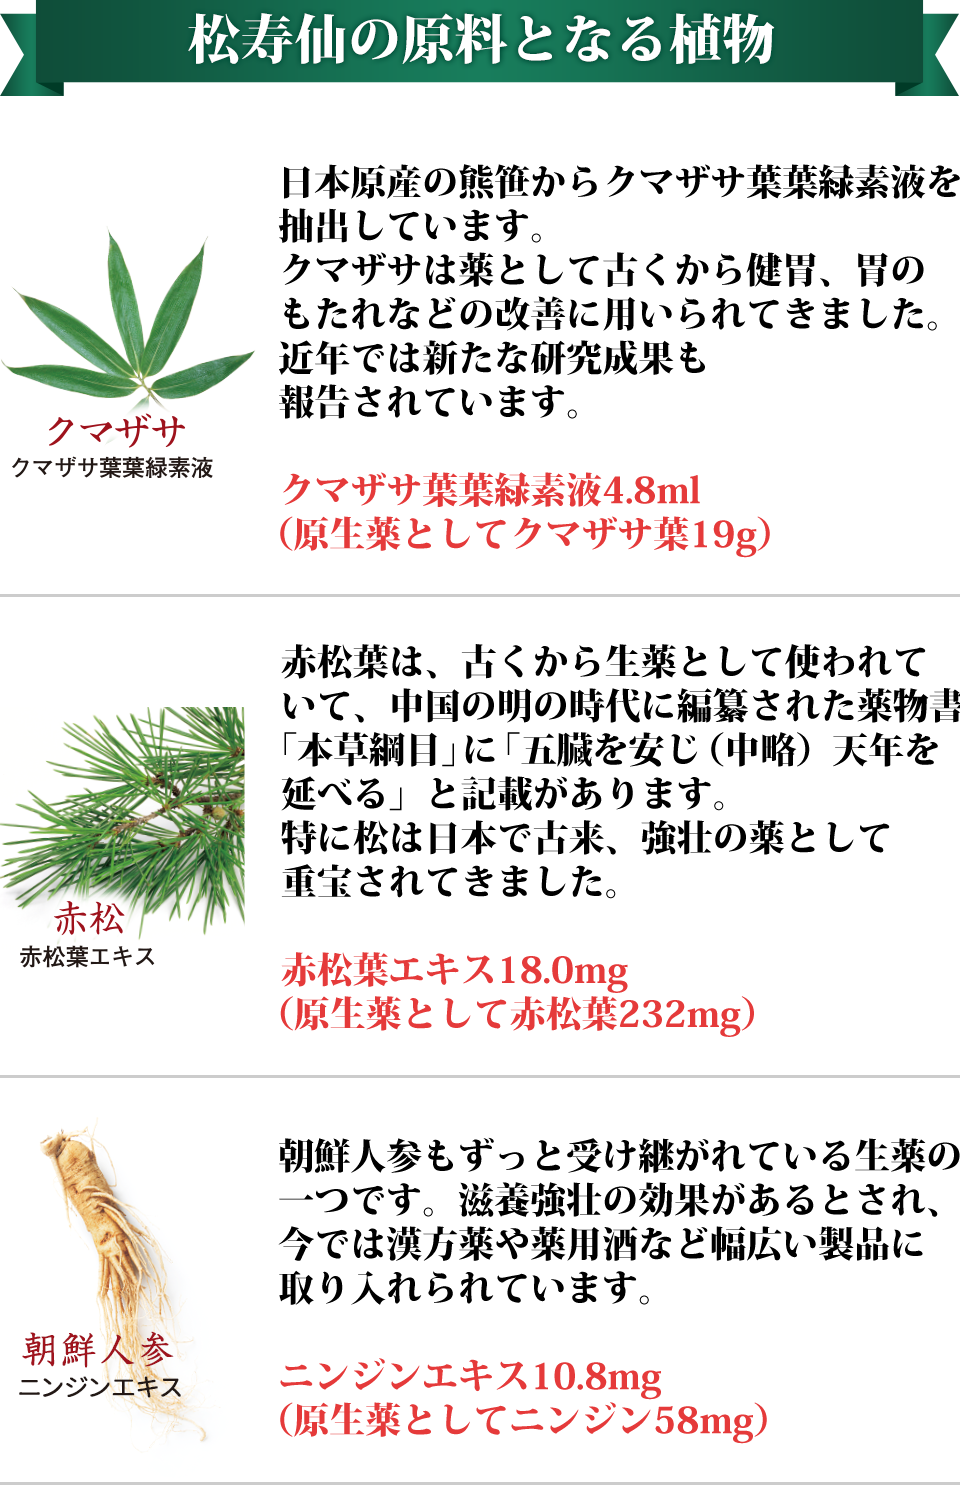 松寿仙の原料となる植物